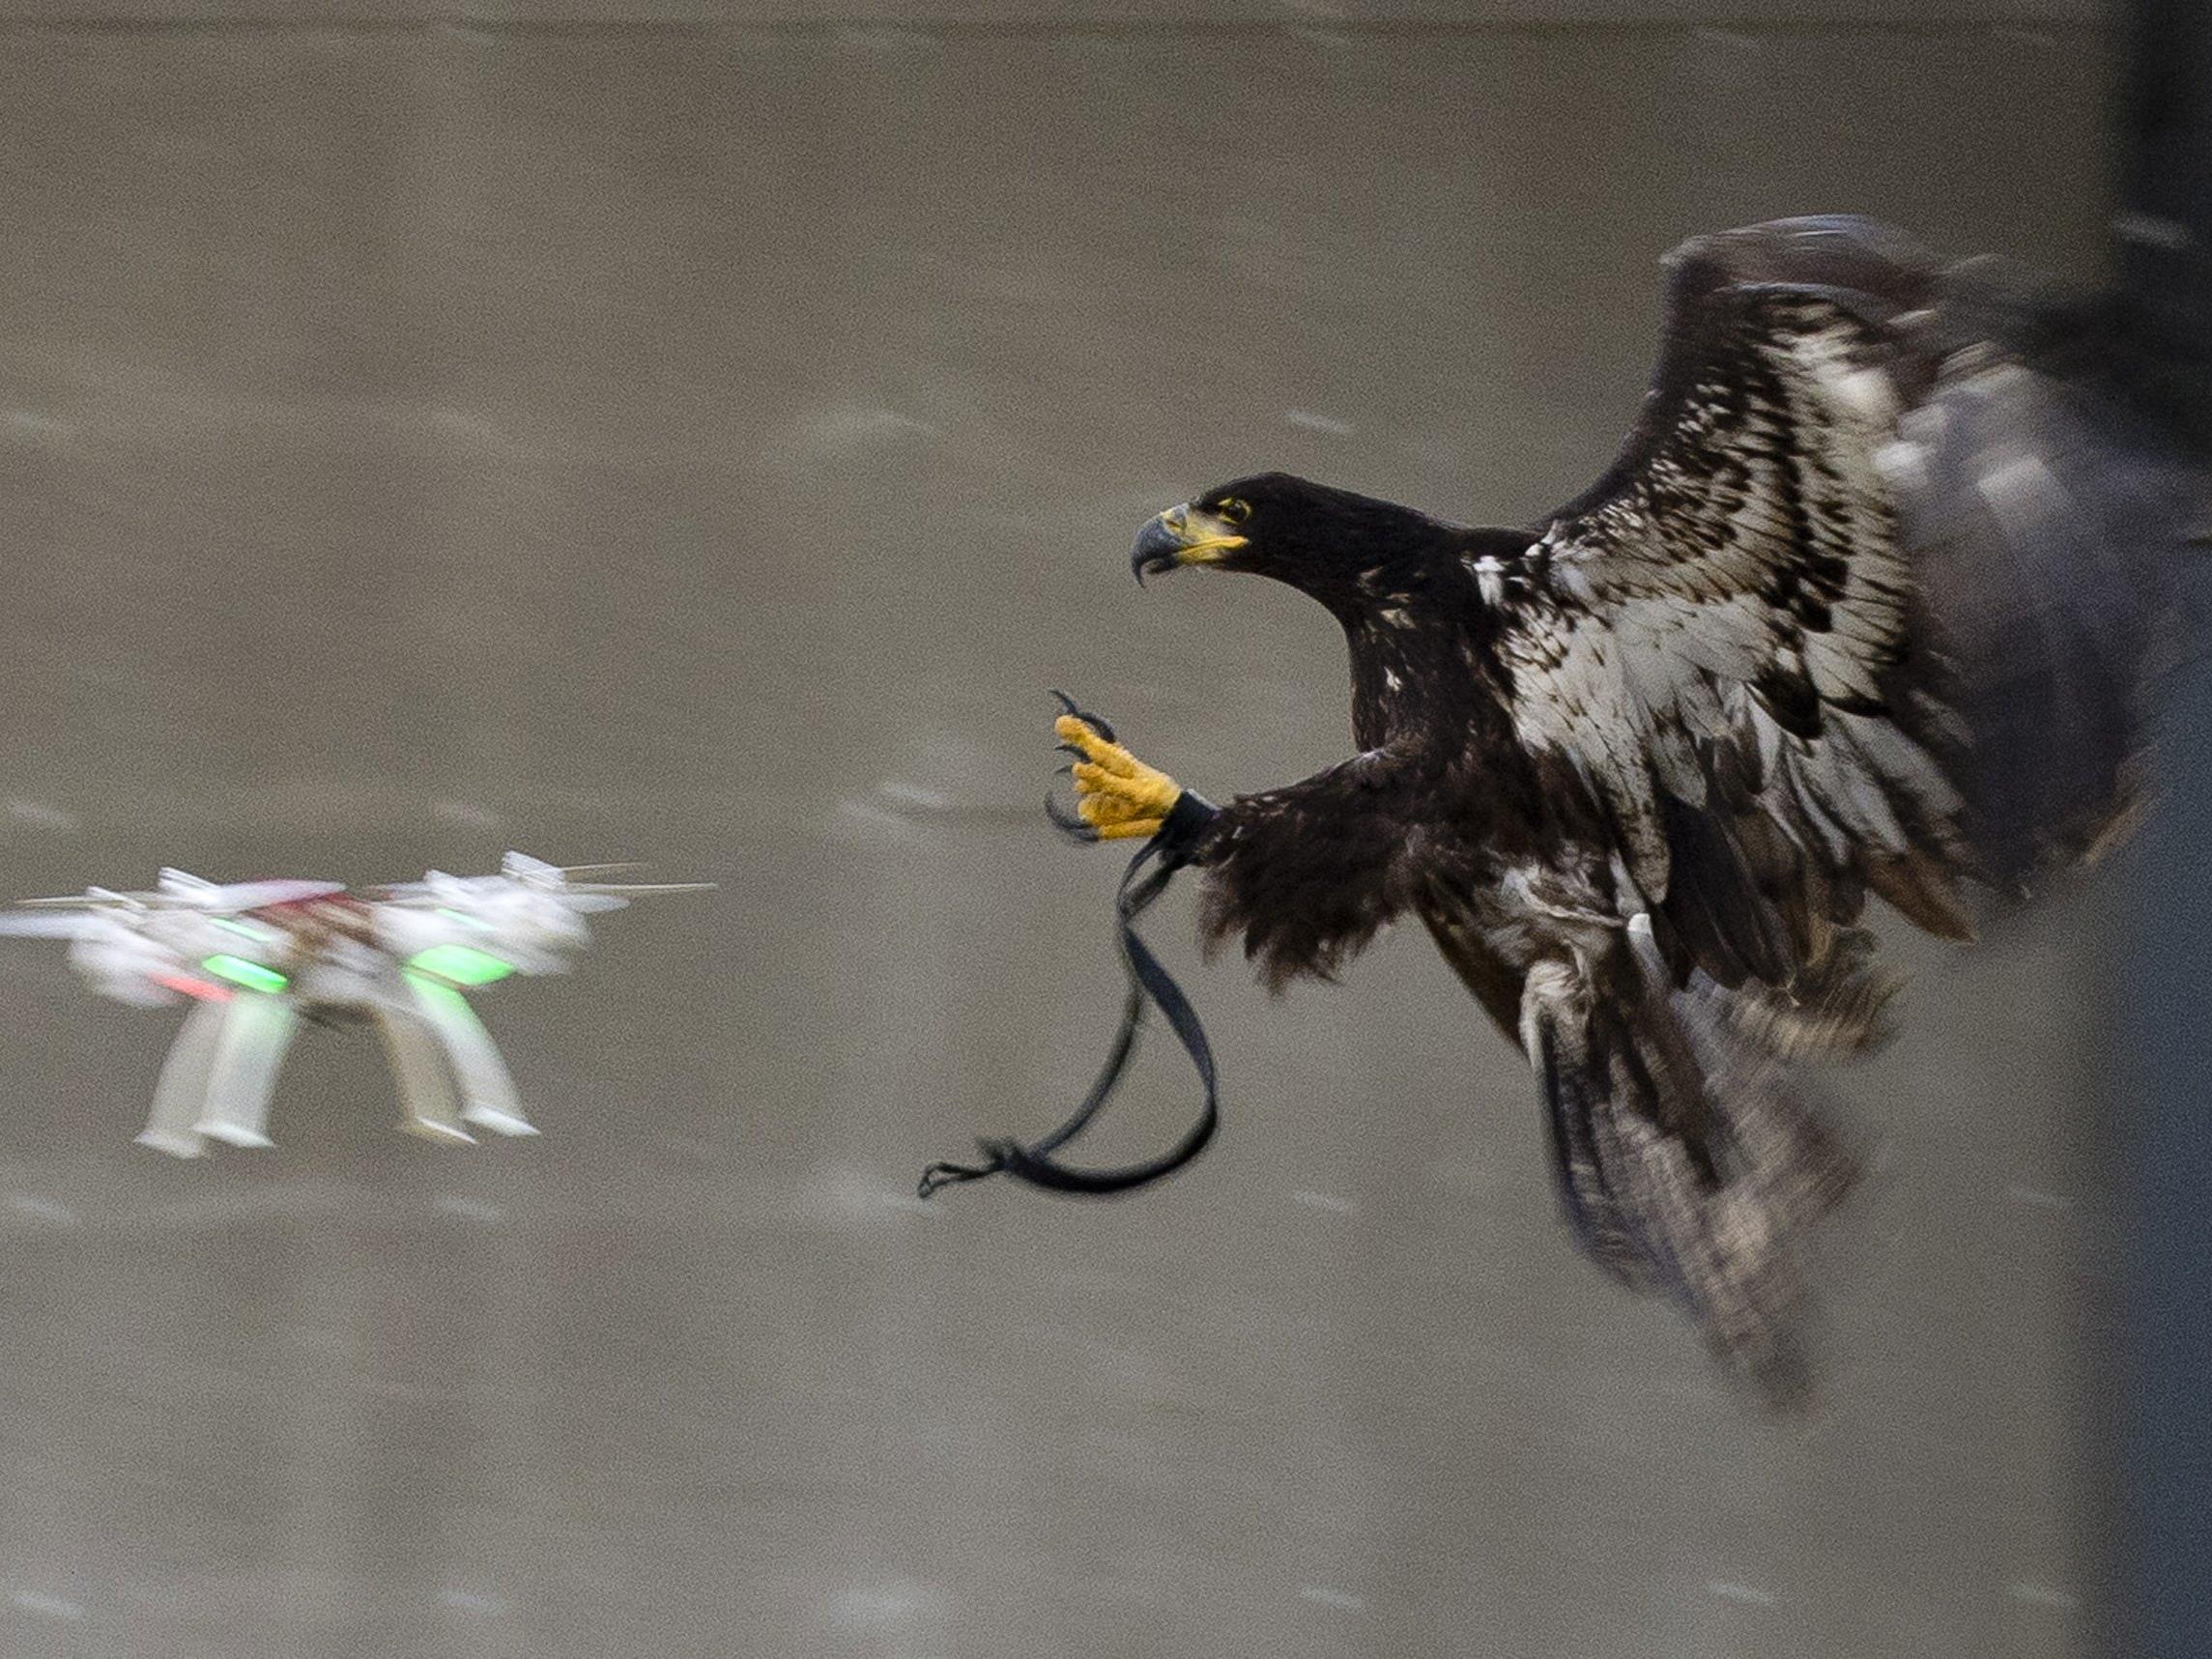 Niederlande: Raubvögel als Waffe gegen feindliche Drohnen